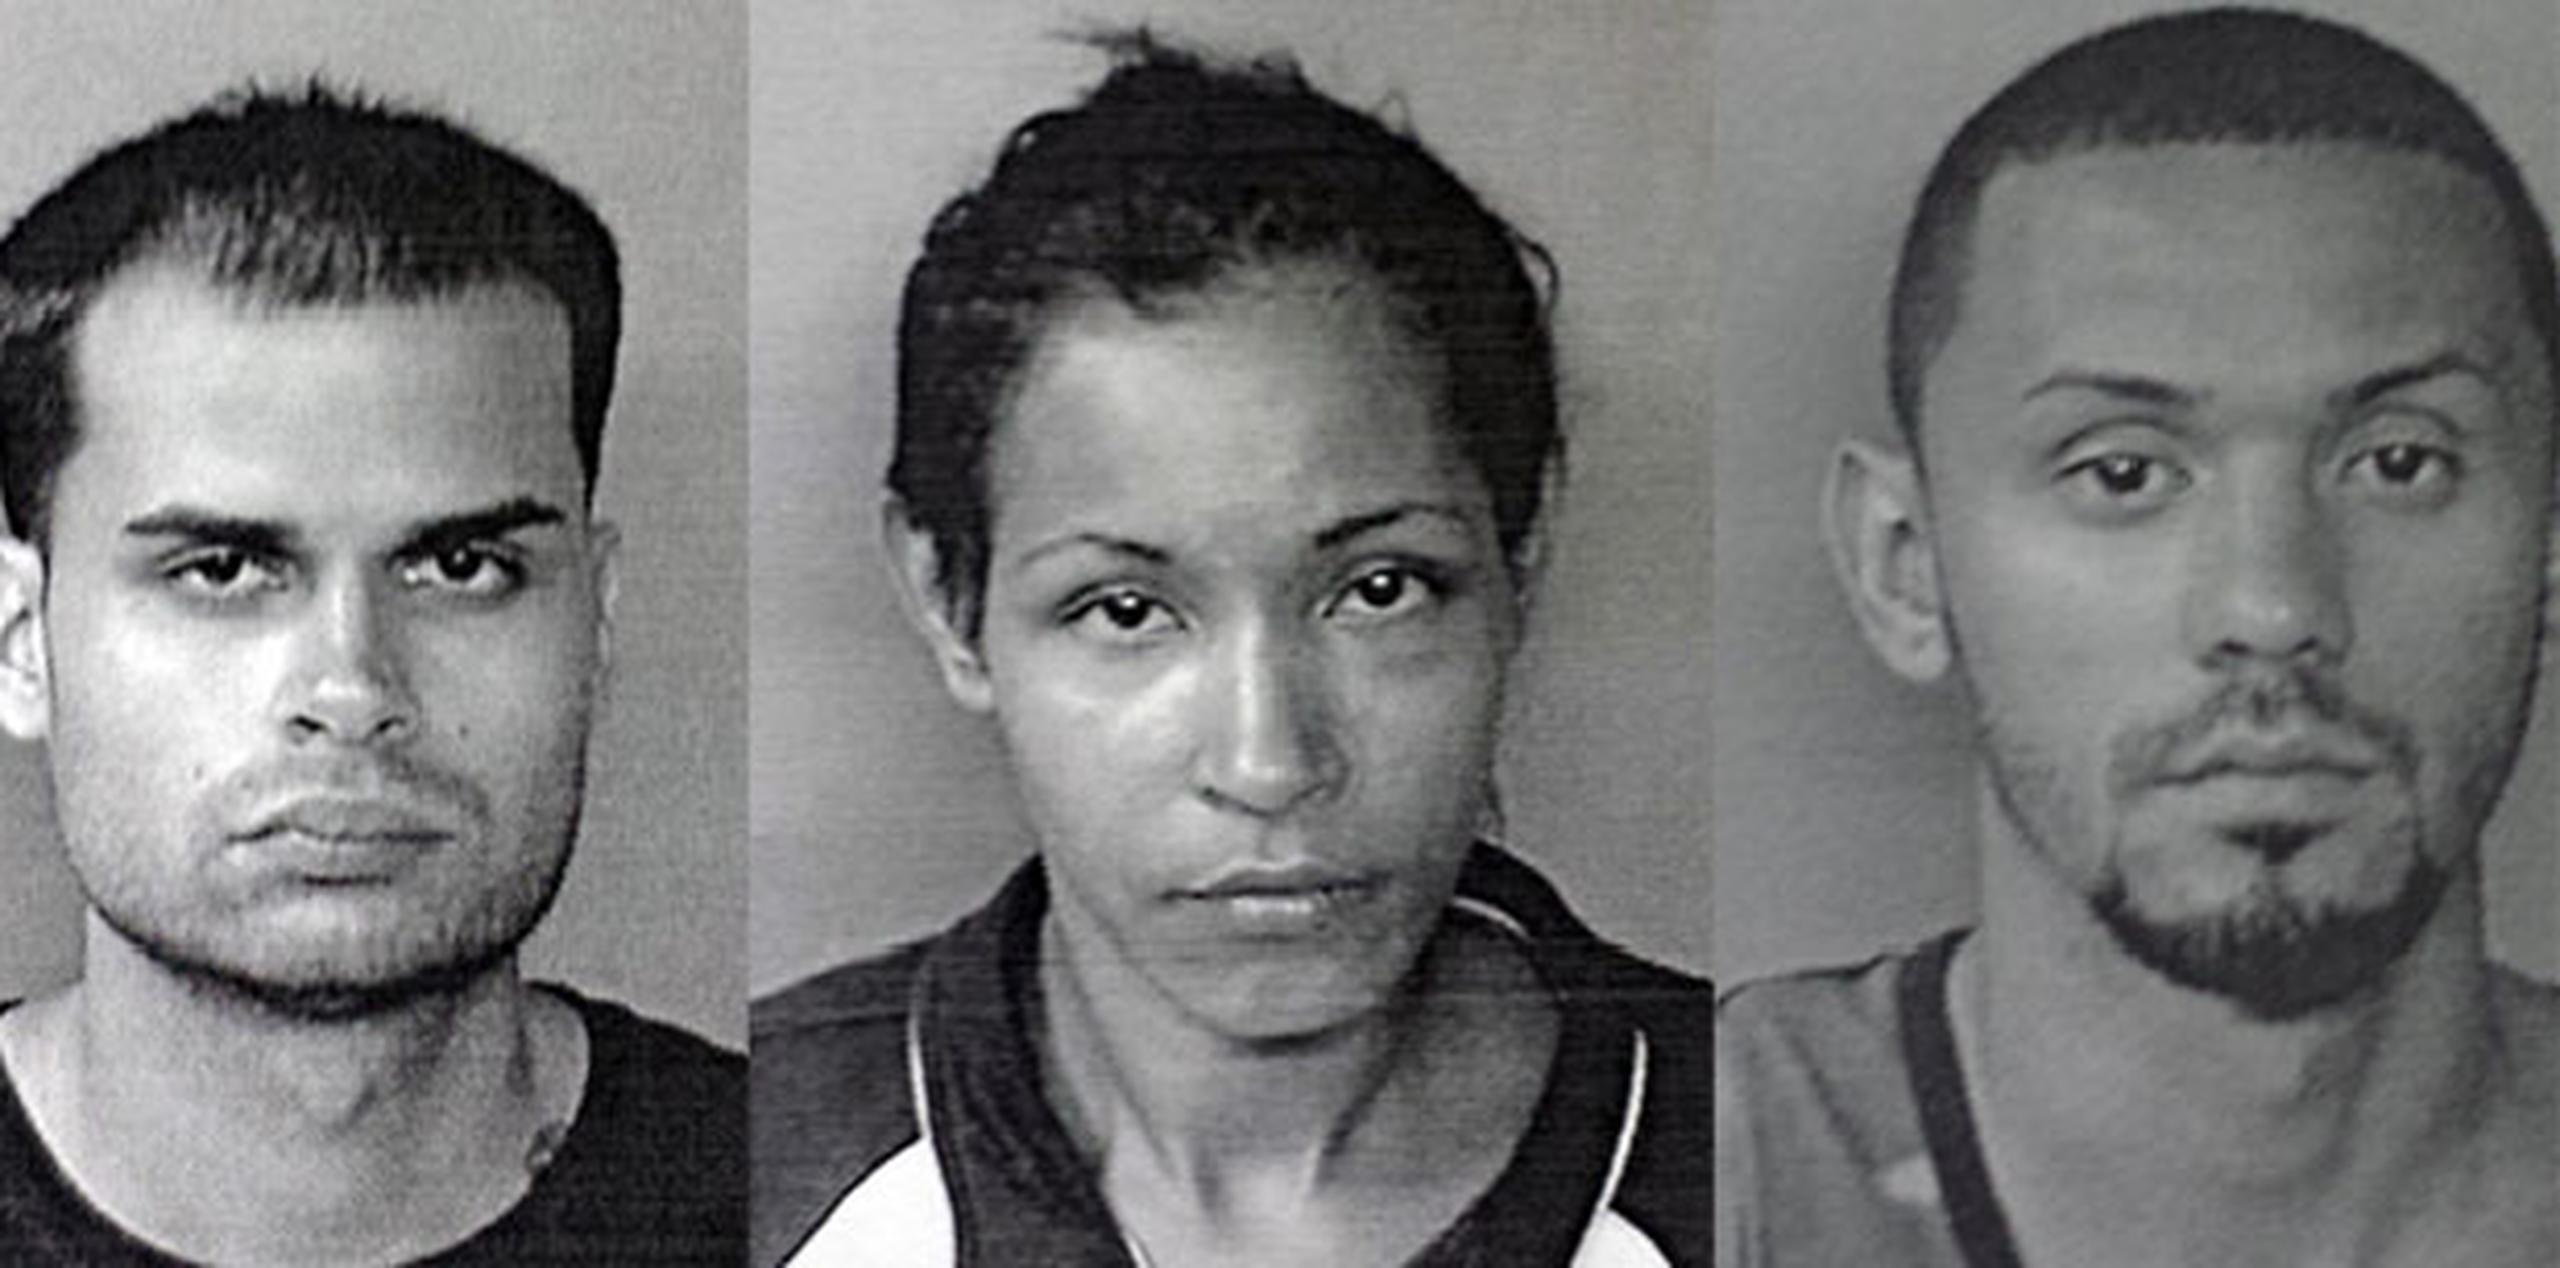 A Sebastián Tuesta Labrador, Hildaliz Rosado y Ángel García Hernández se les imputa la muerte de Antonio Lo Altamiranda, quien murió de un balazo en el rostro en medio de un intento de robo. (Suministrada)